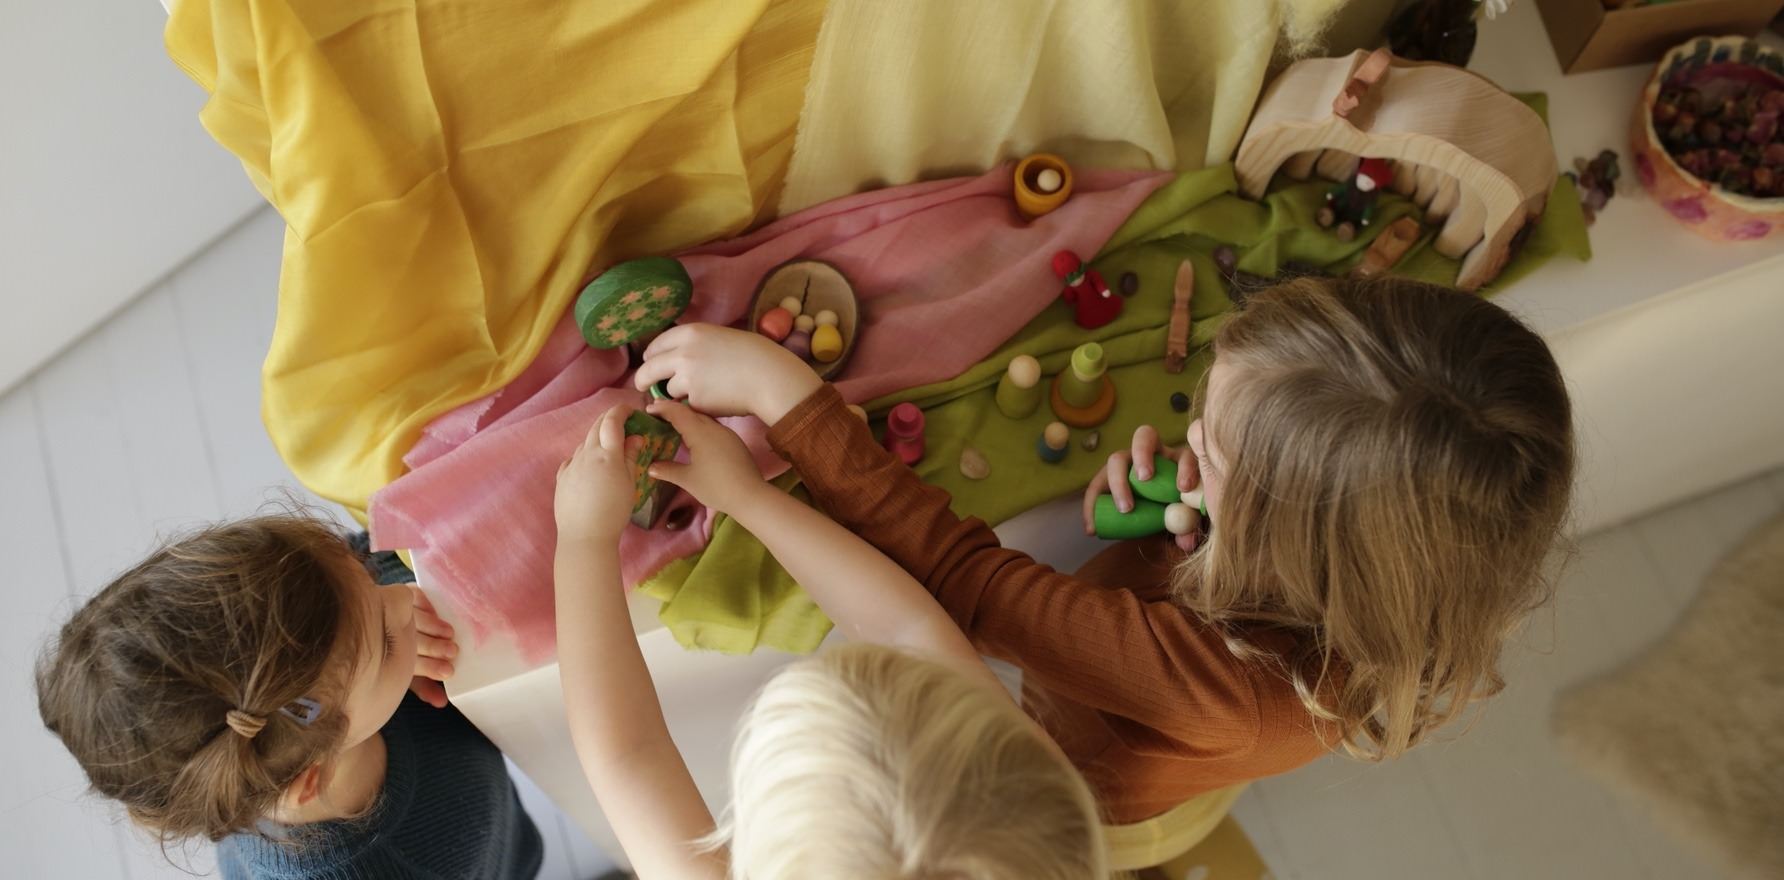 Gemeinsam mit Kindern den Jahreszeitentisch zu schmücken, kann ein schönes Familien-Ritual werden